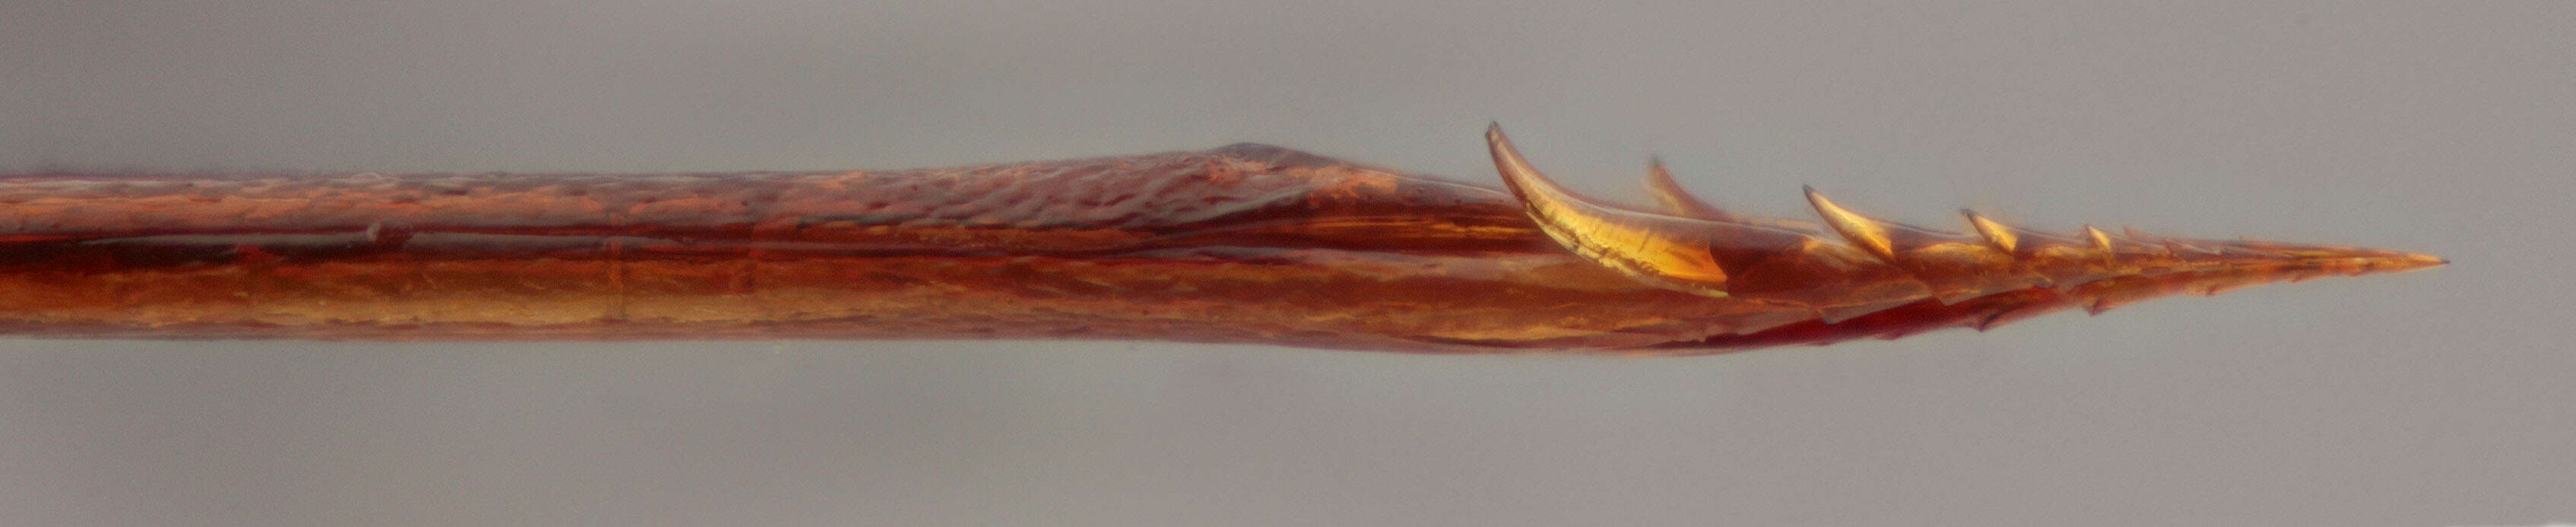 Sivun Zaglyptus varipes (Gravenhorst 1829) kuva